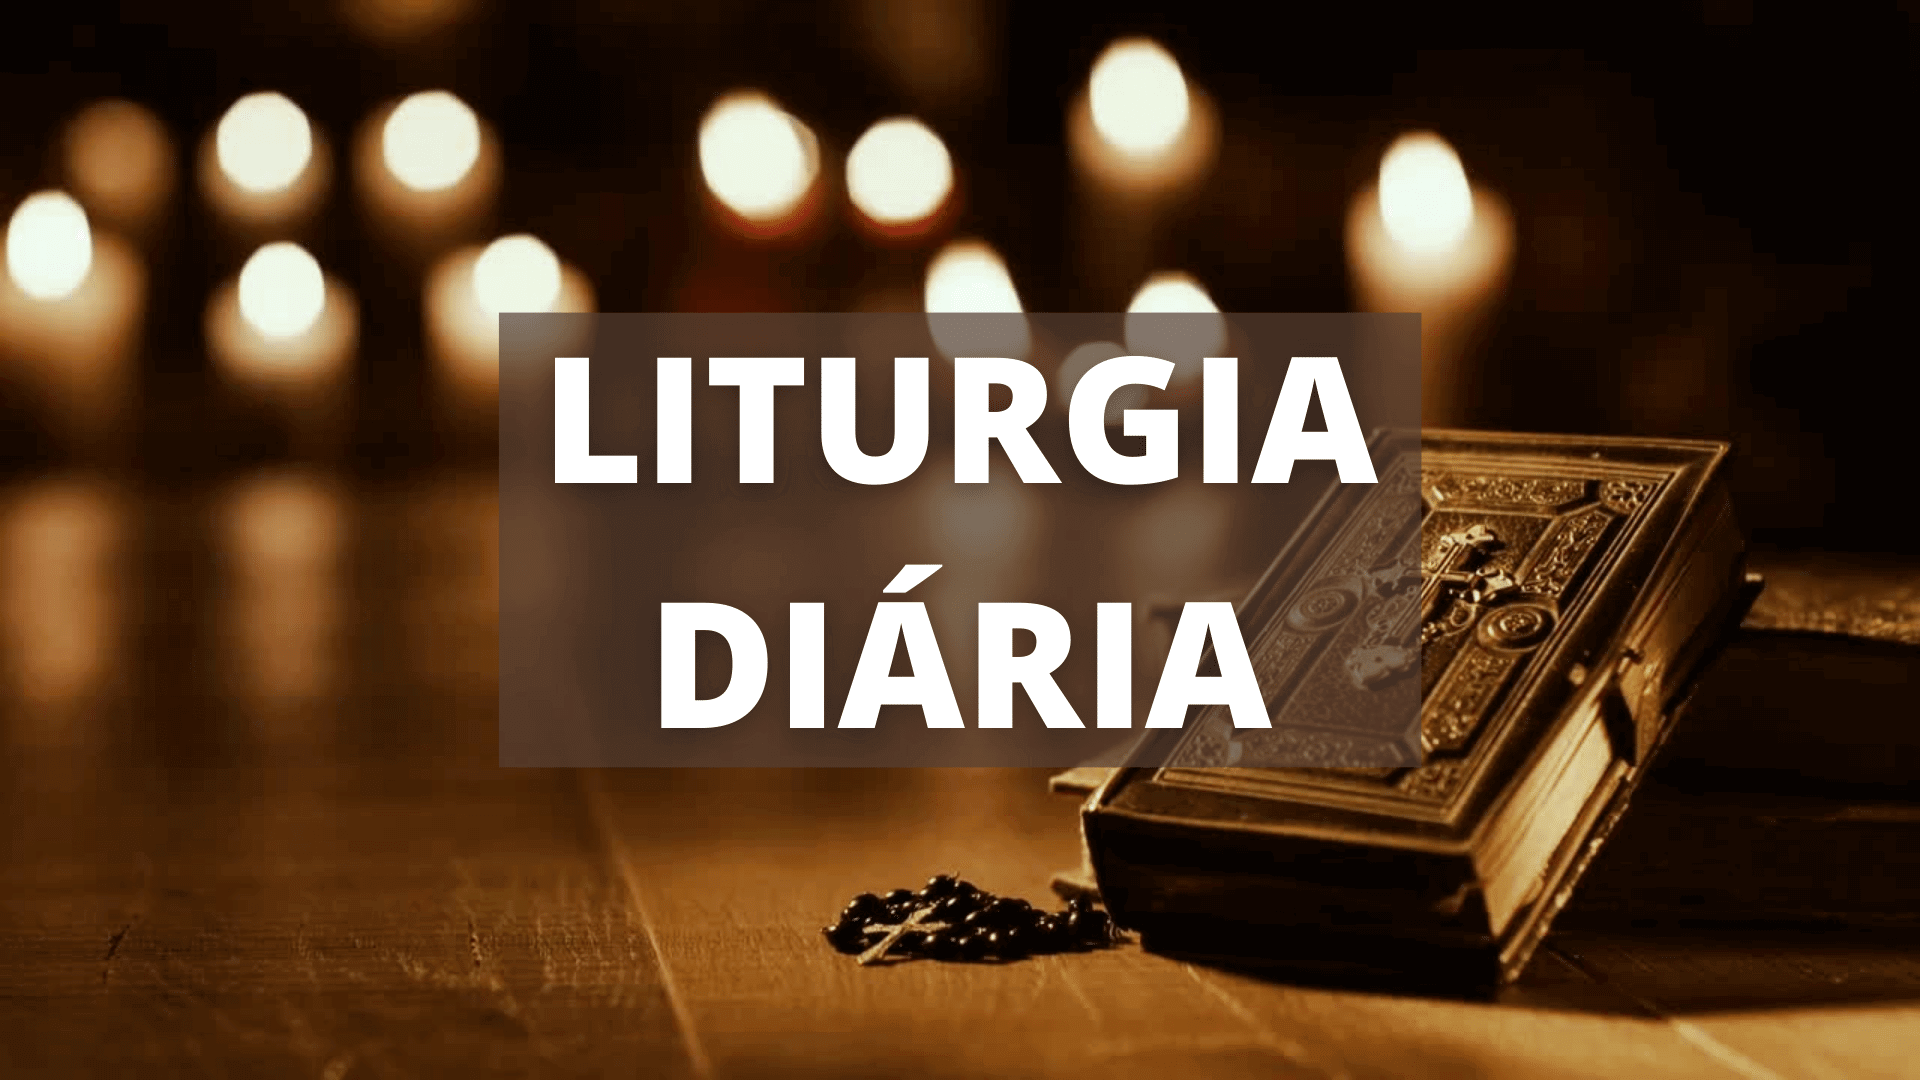 LITURGIA DIÁRIA | EVANGELHO DE HOJE